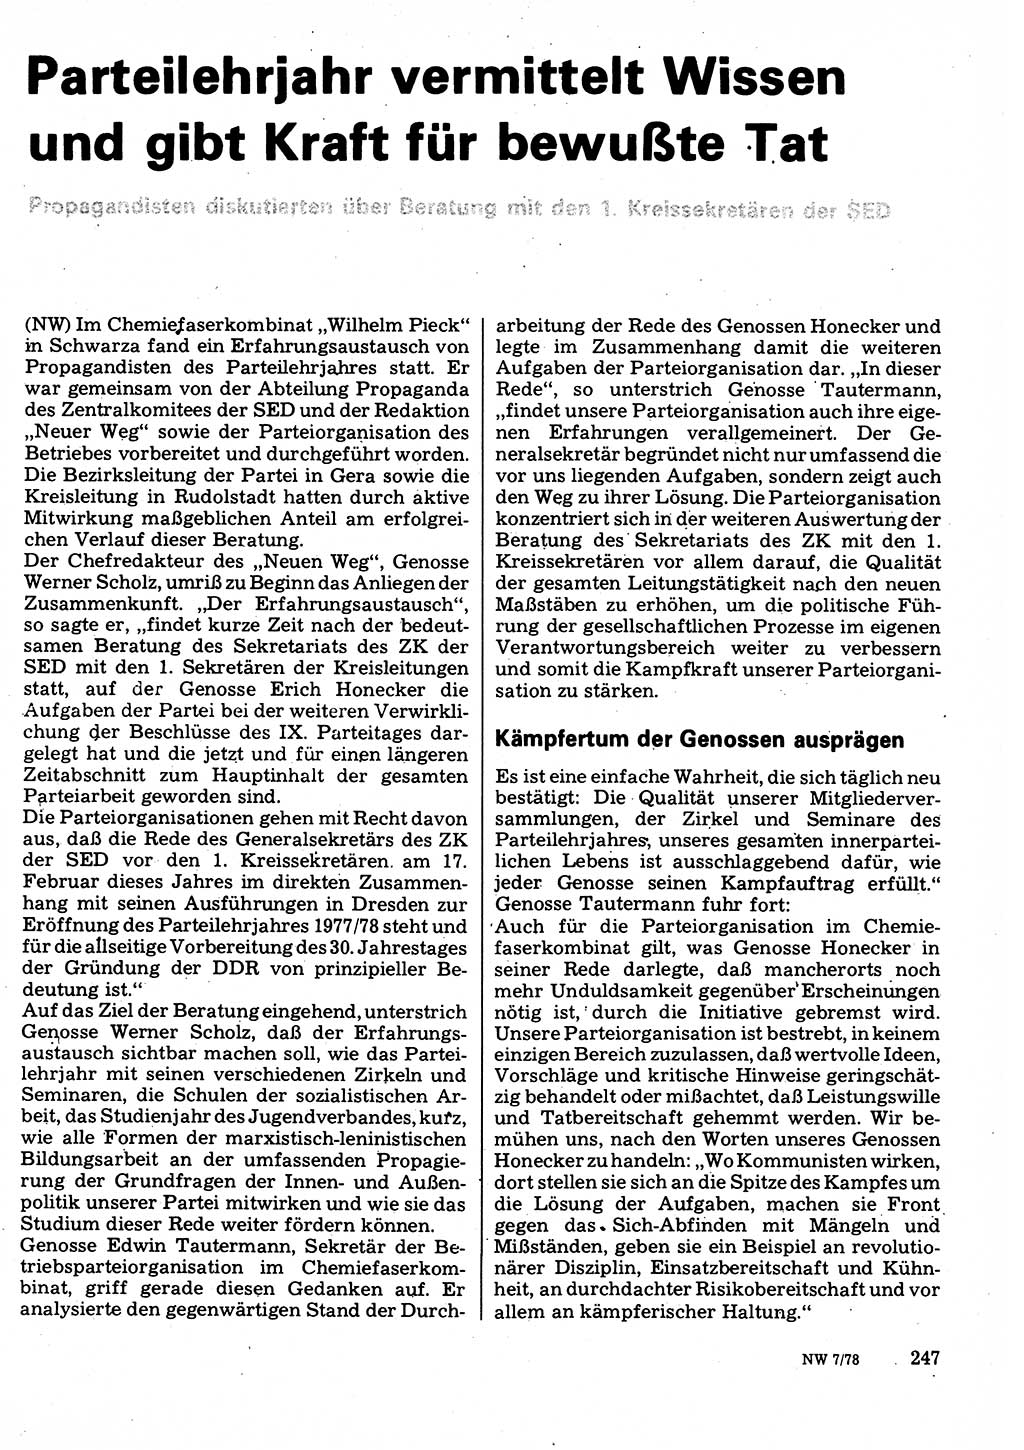 Neuer Weg (NW), Organ des Zentralkomitees (ZK) der SED (Sozialistische Einheitspartei Deutschlands) für Fragen des Parteilebens, 33. Jahrgang [Deutsche Demokratische Republik (DDR)] 1978, Seite 247 (NW ZK SED DDR 1978, S. 247)